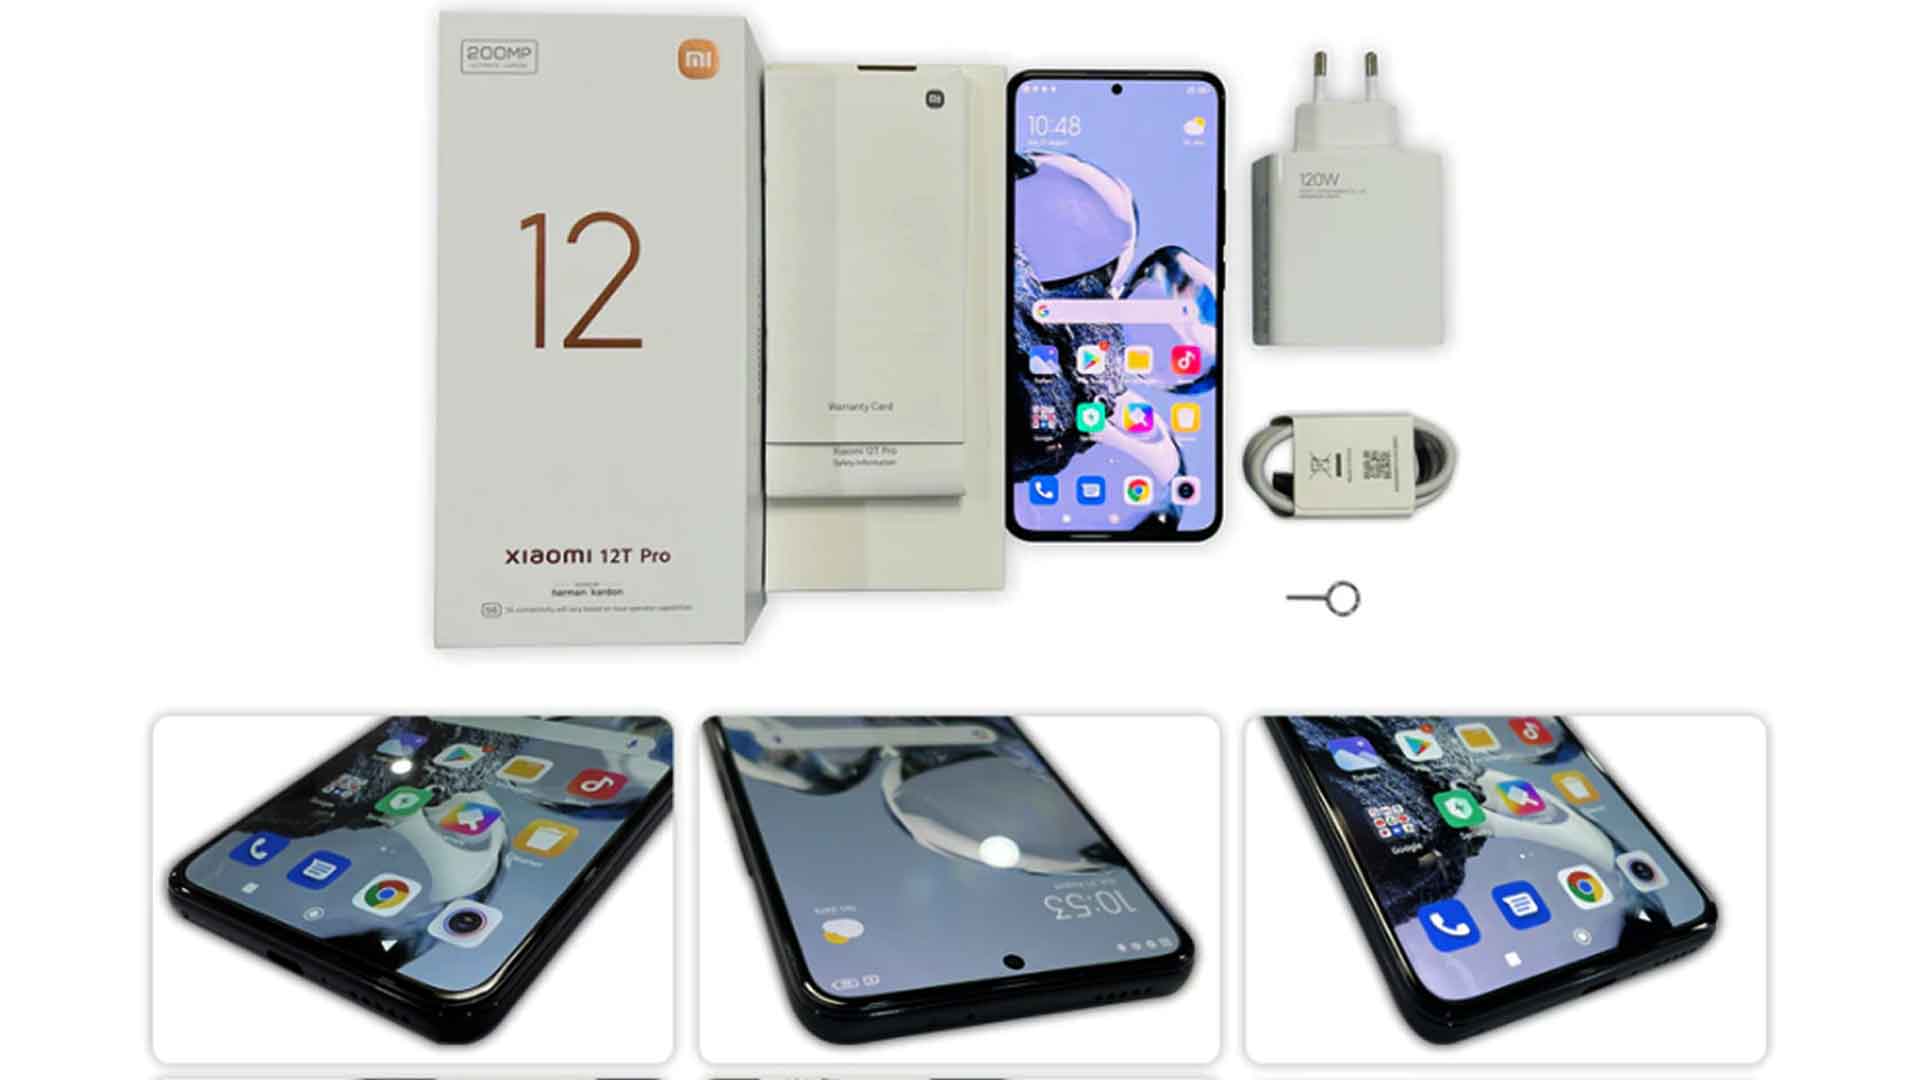 Xiaomi 12T Pro Review Xiaomi 12T Pro Xiaomi 12T Pro unboxing Xiaomi 12T Pro price Xiaomi 12T Pro specs Xiaomi 12T Pro features Xiaomi phone smartphone